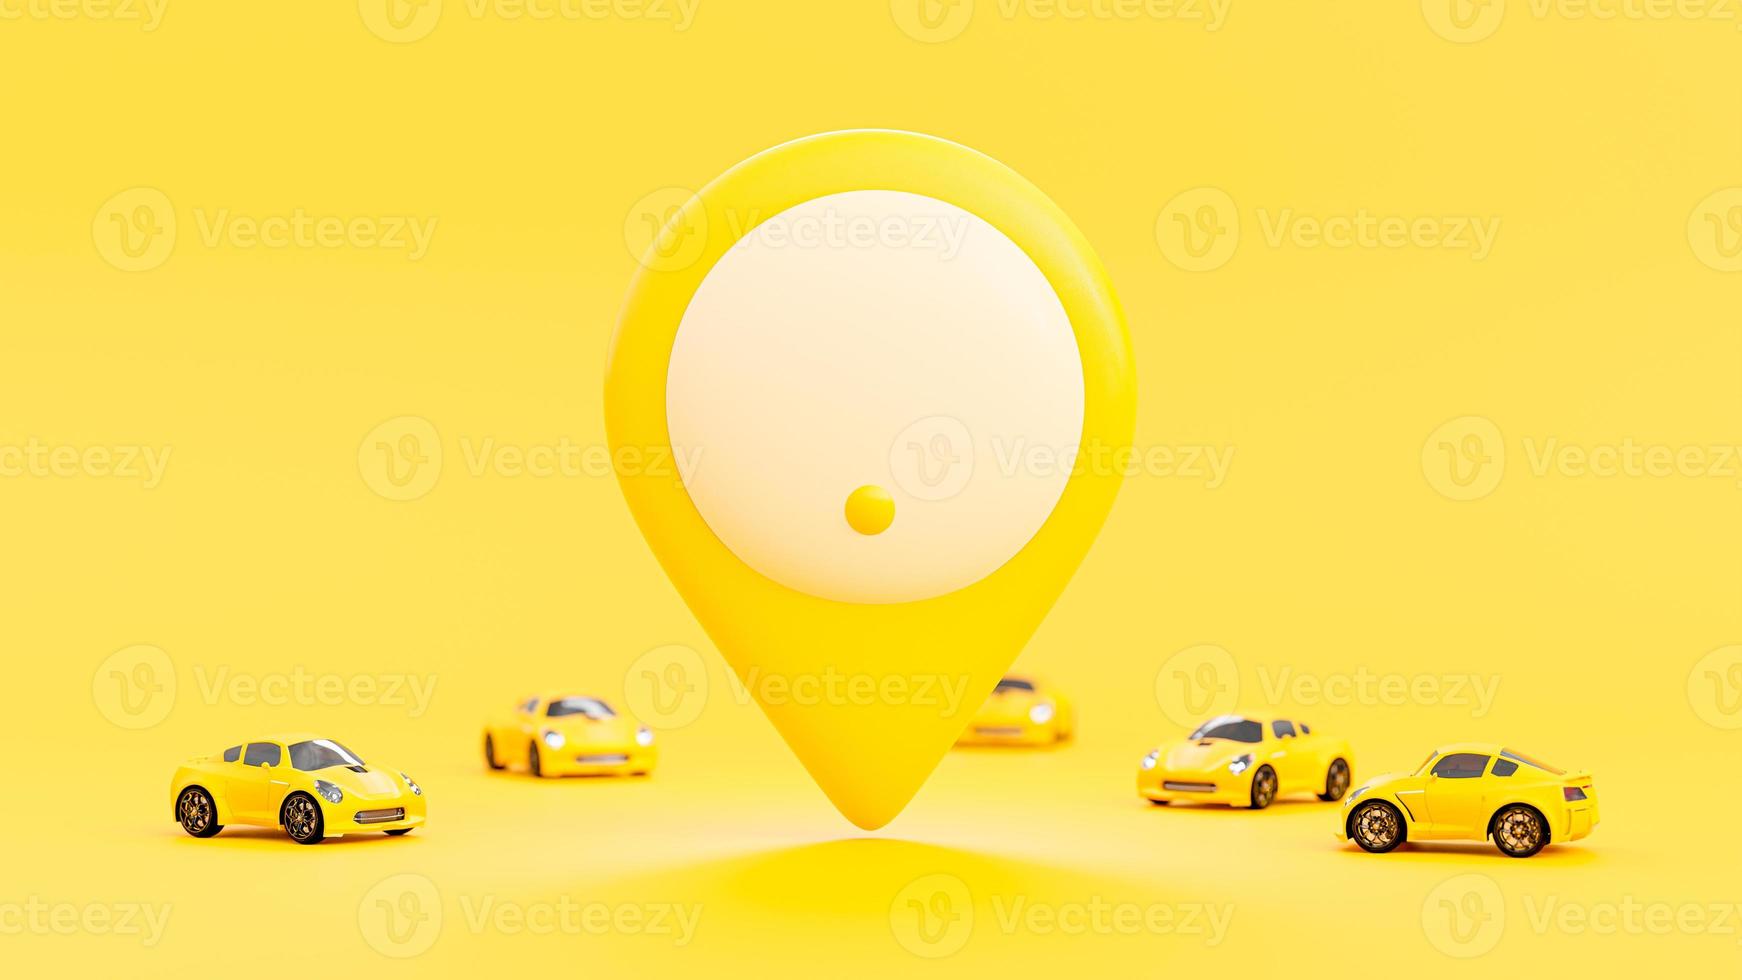 macchina gialla che va allo stesso obiettivo. grande spilla gialla al centro dell'immagine. concetto di idea minima, rendering 3d. foto